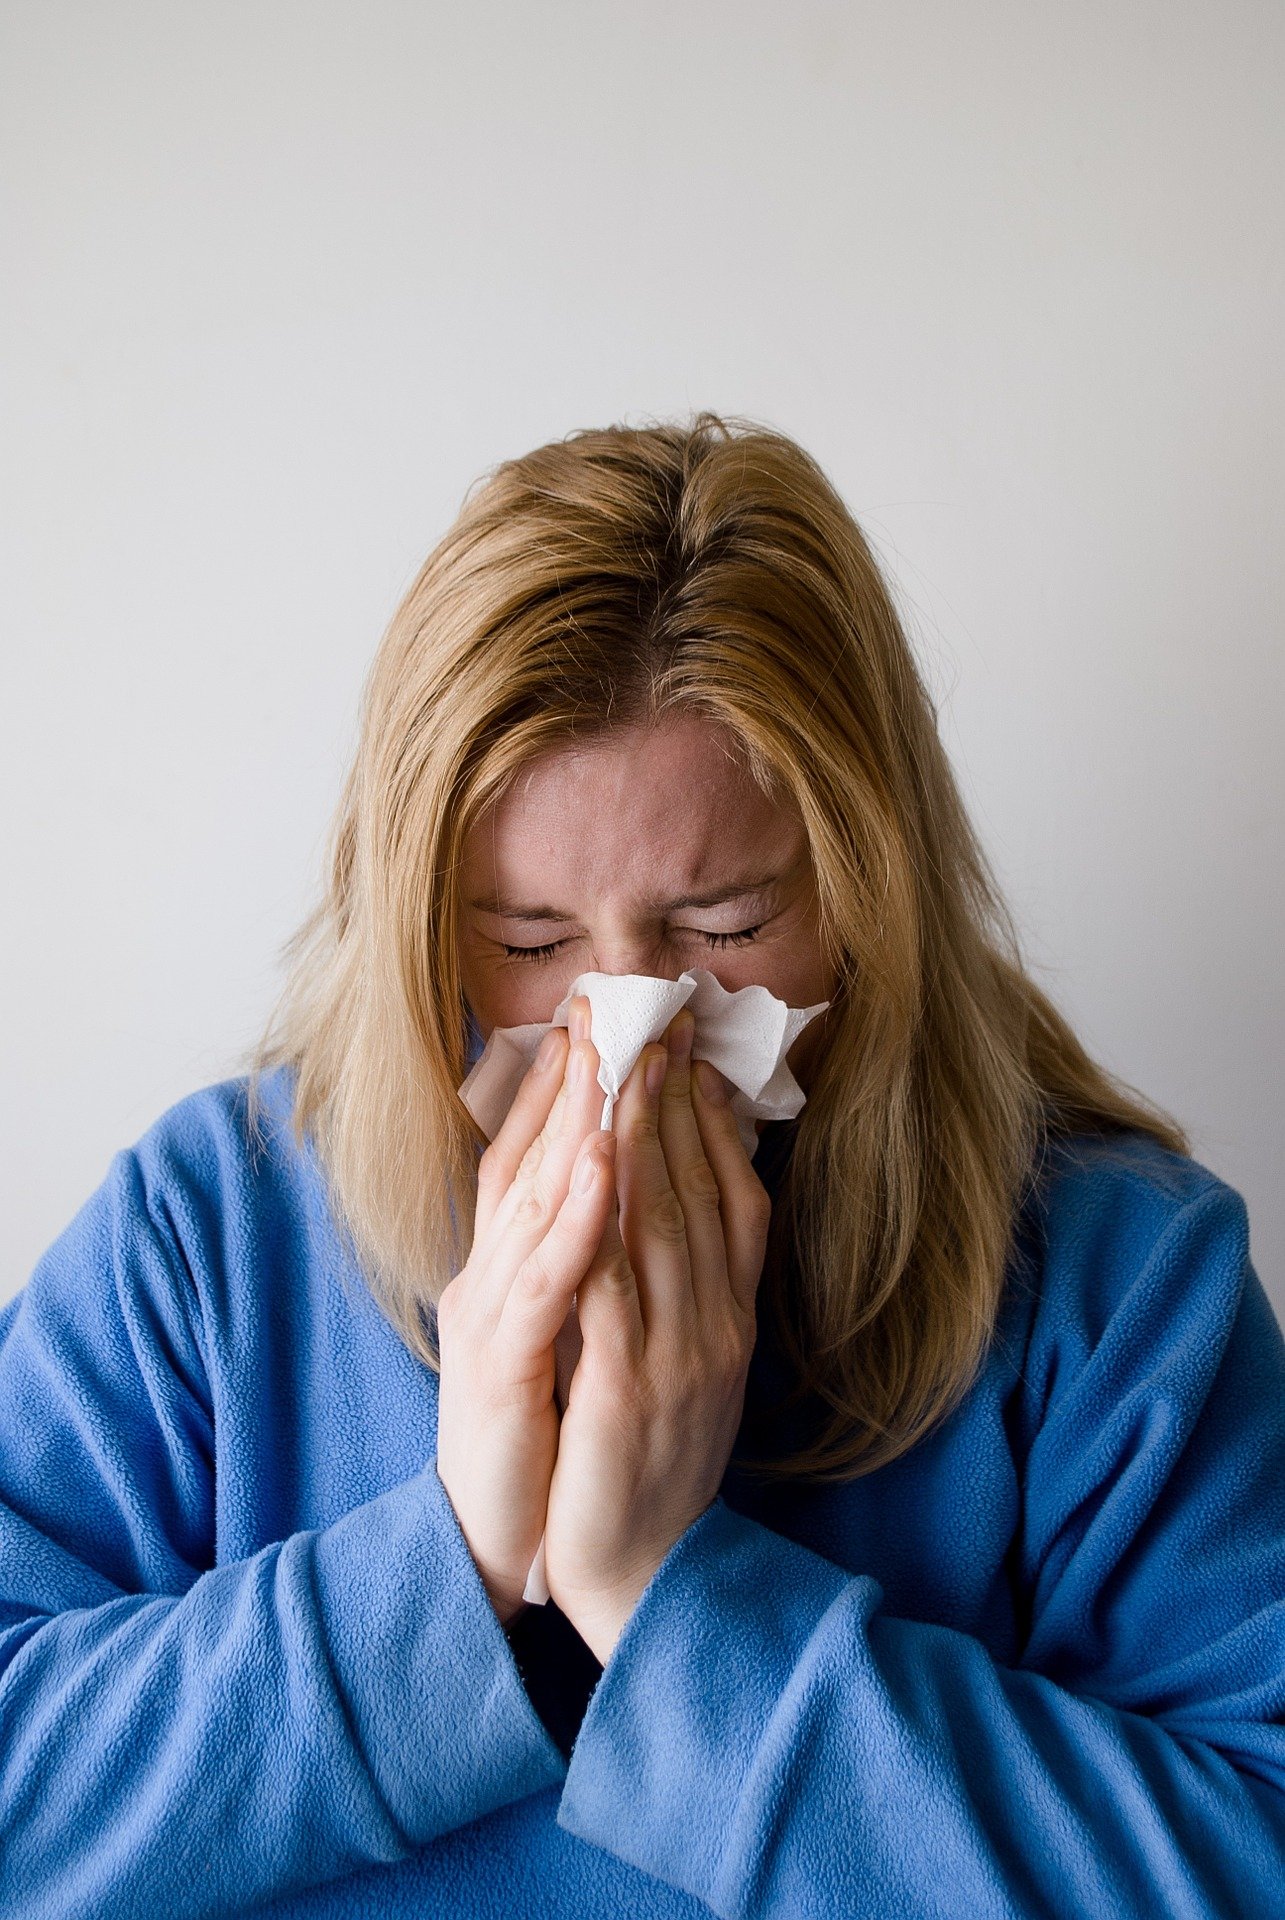 Пикът на грипа се очаква към средата на месец януари